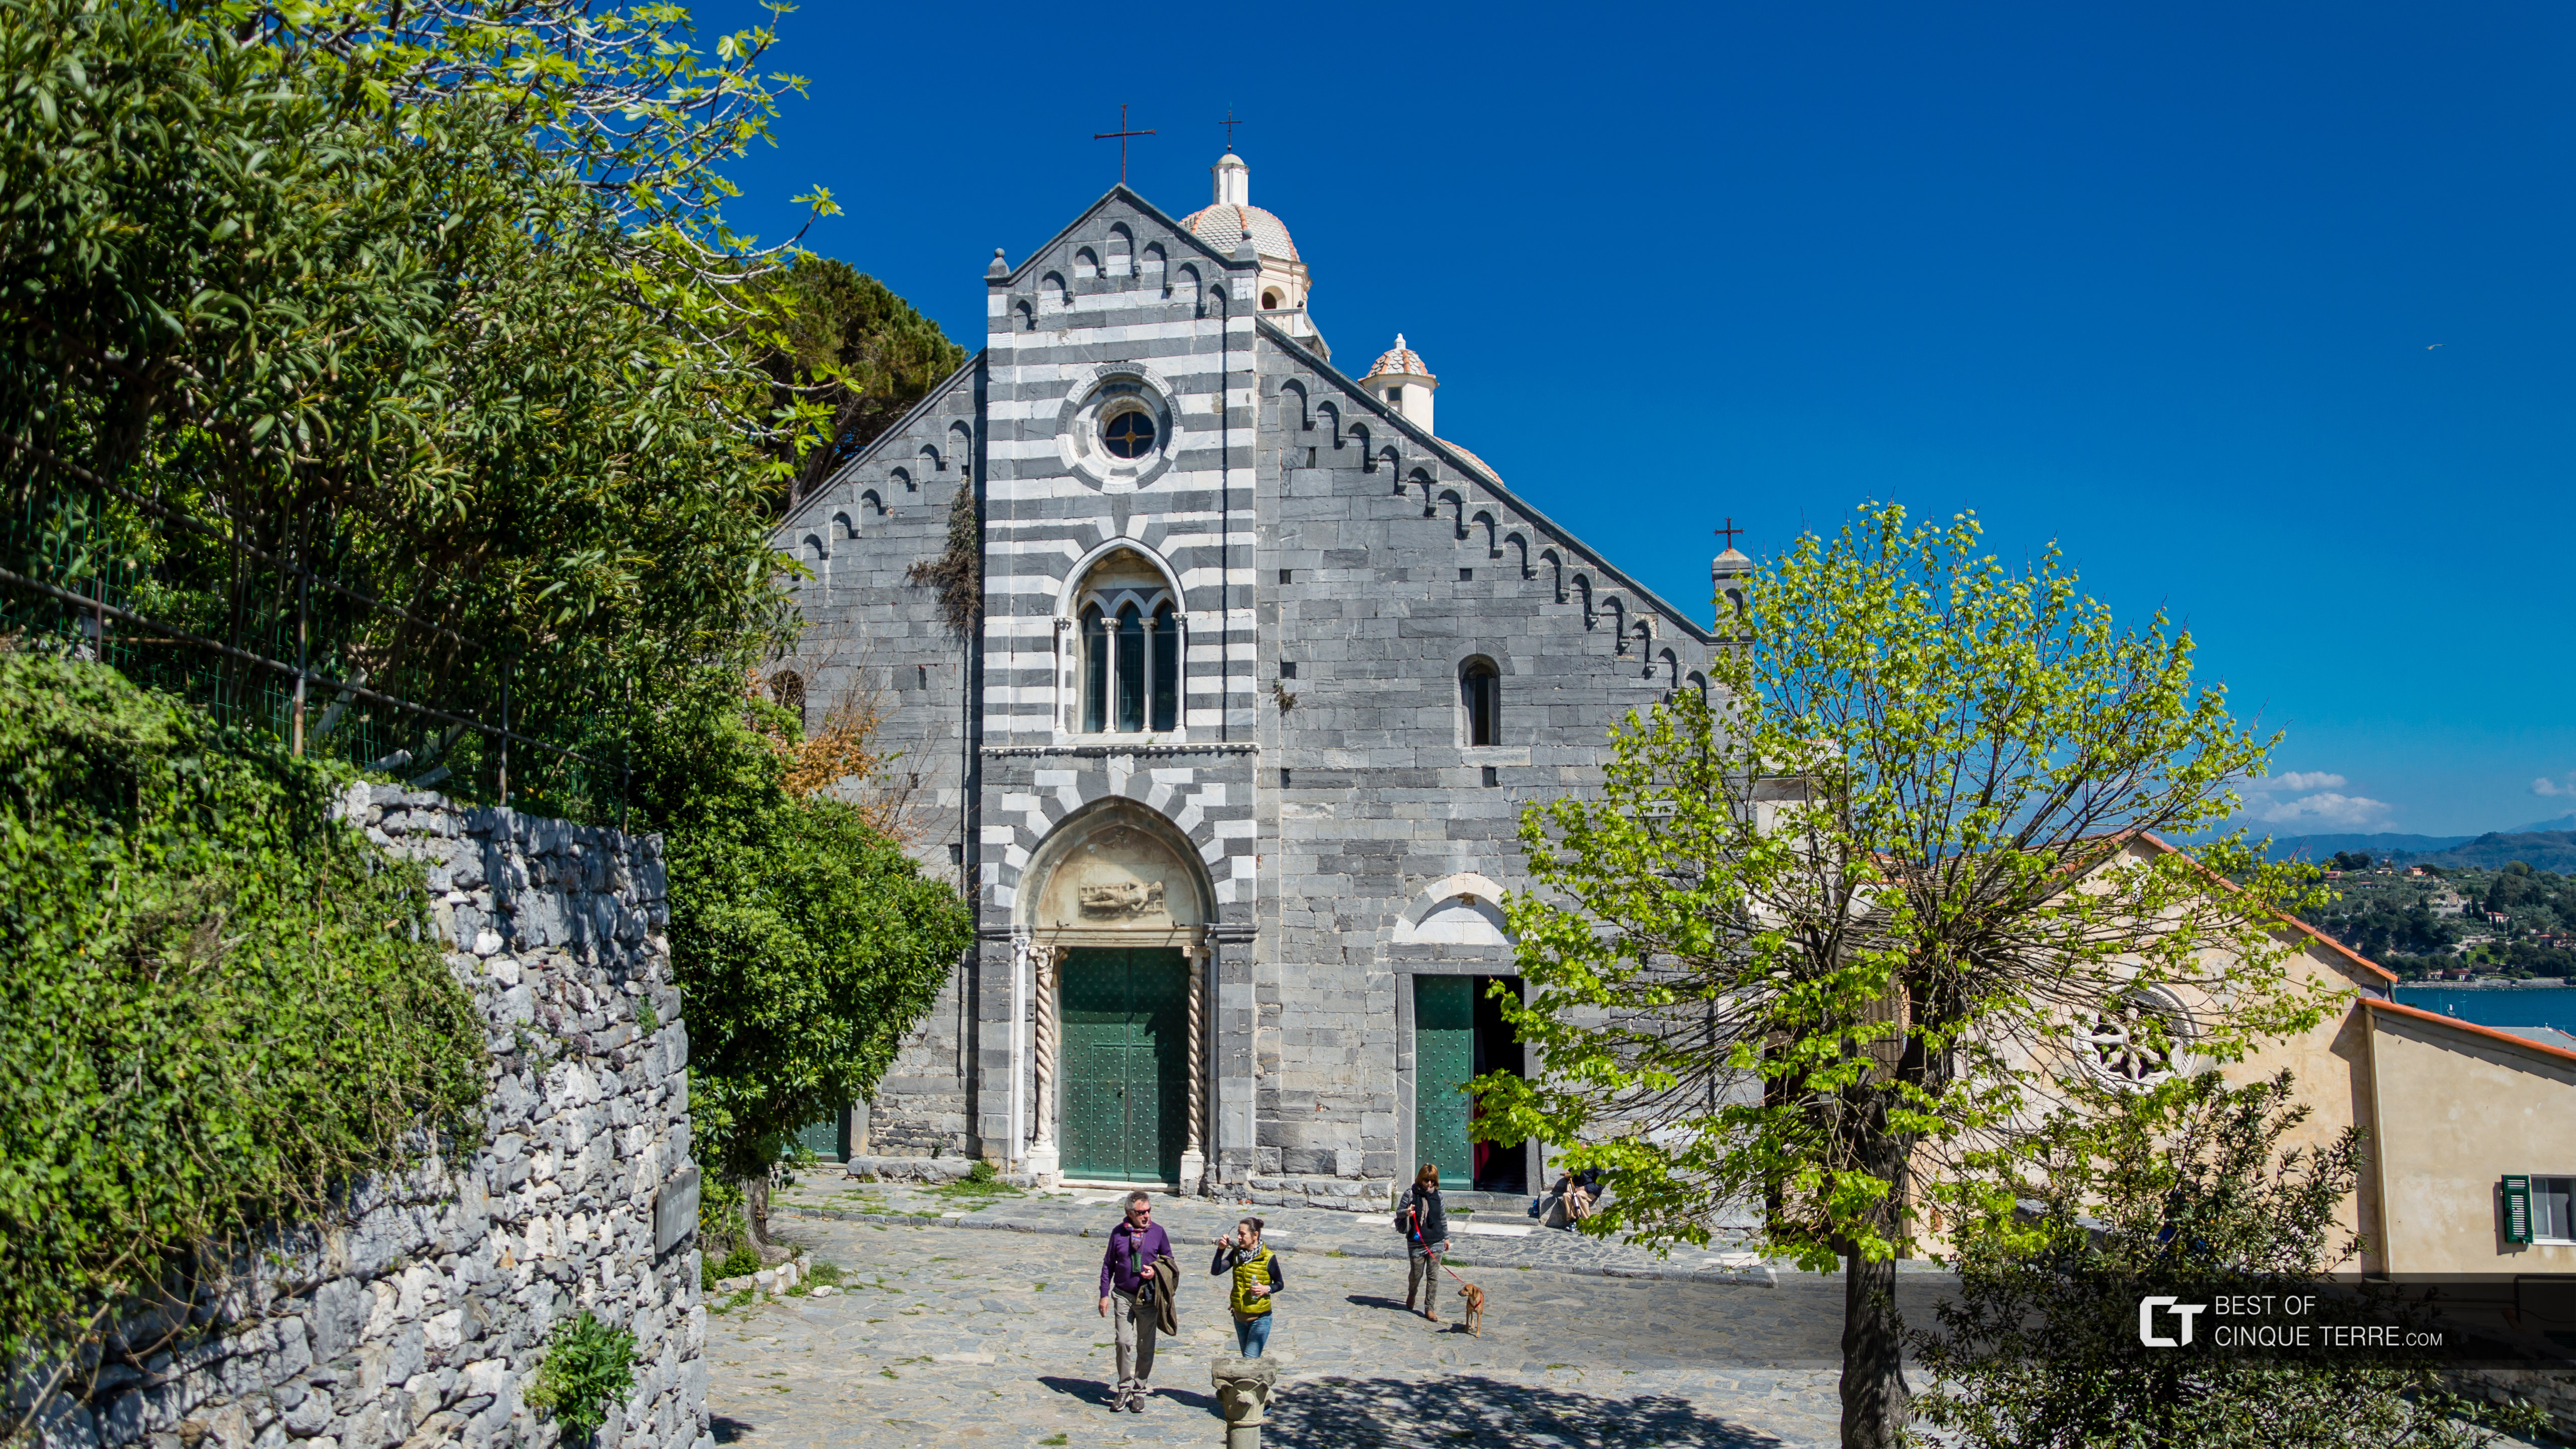 Igreja de São Pedro, Portovenere, Itália